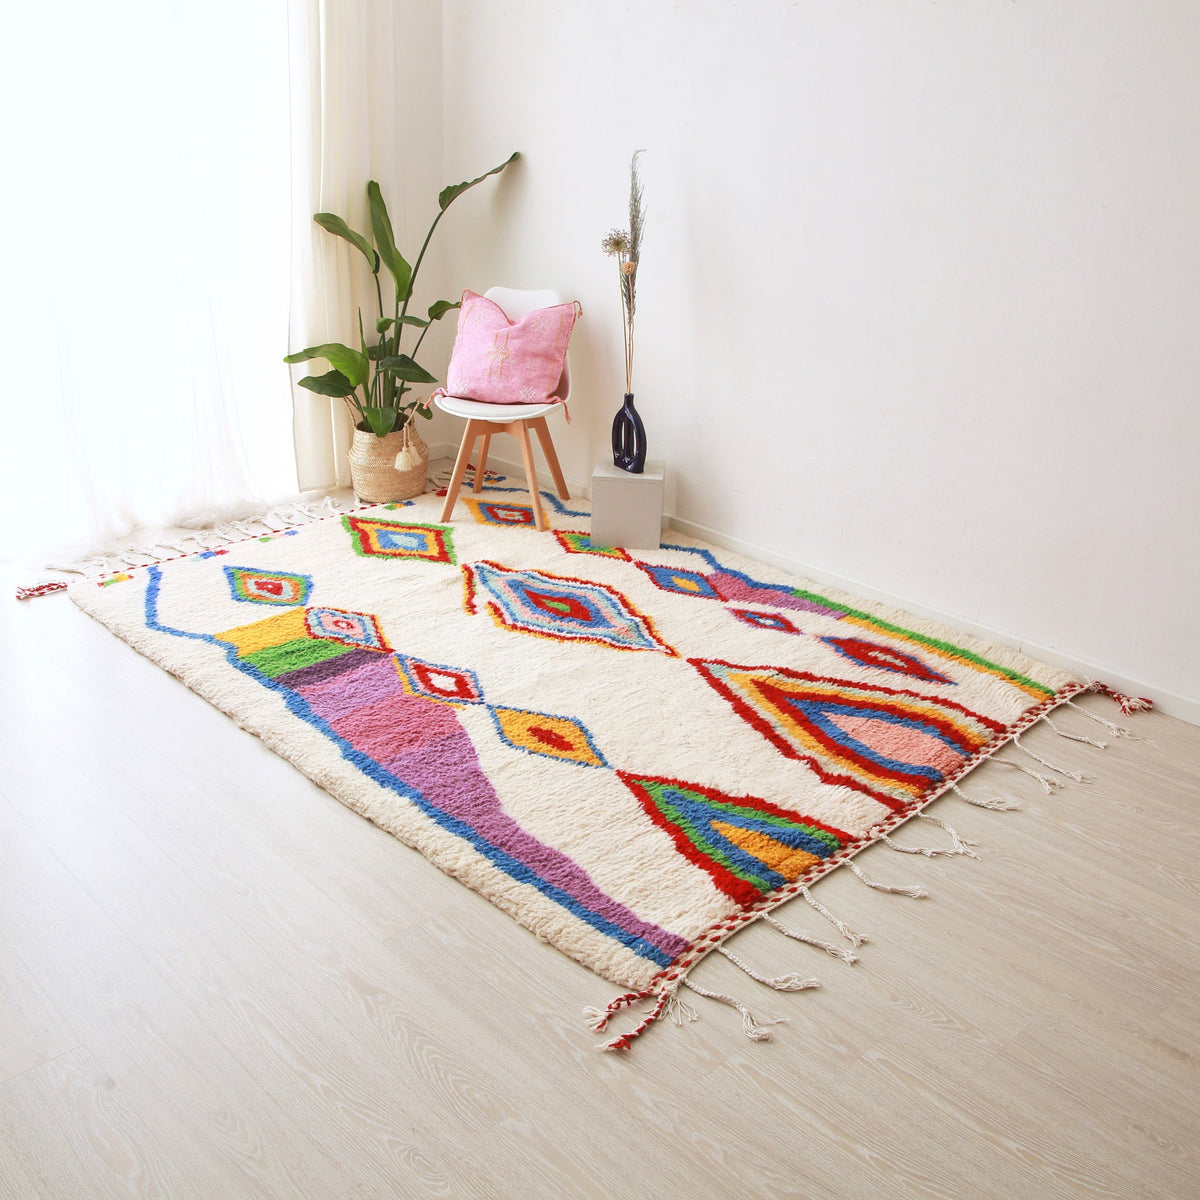 tappeto azilal disteso realizzato con lana bianca e rombi di diverse dimensioni dai colori brillanti. Sul tappeto c'è una pianta, una sedia bianca con un cuscino in sabra rosa e un vaso in ceramica blu